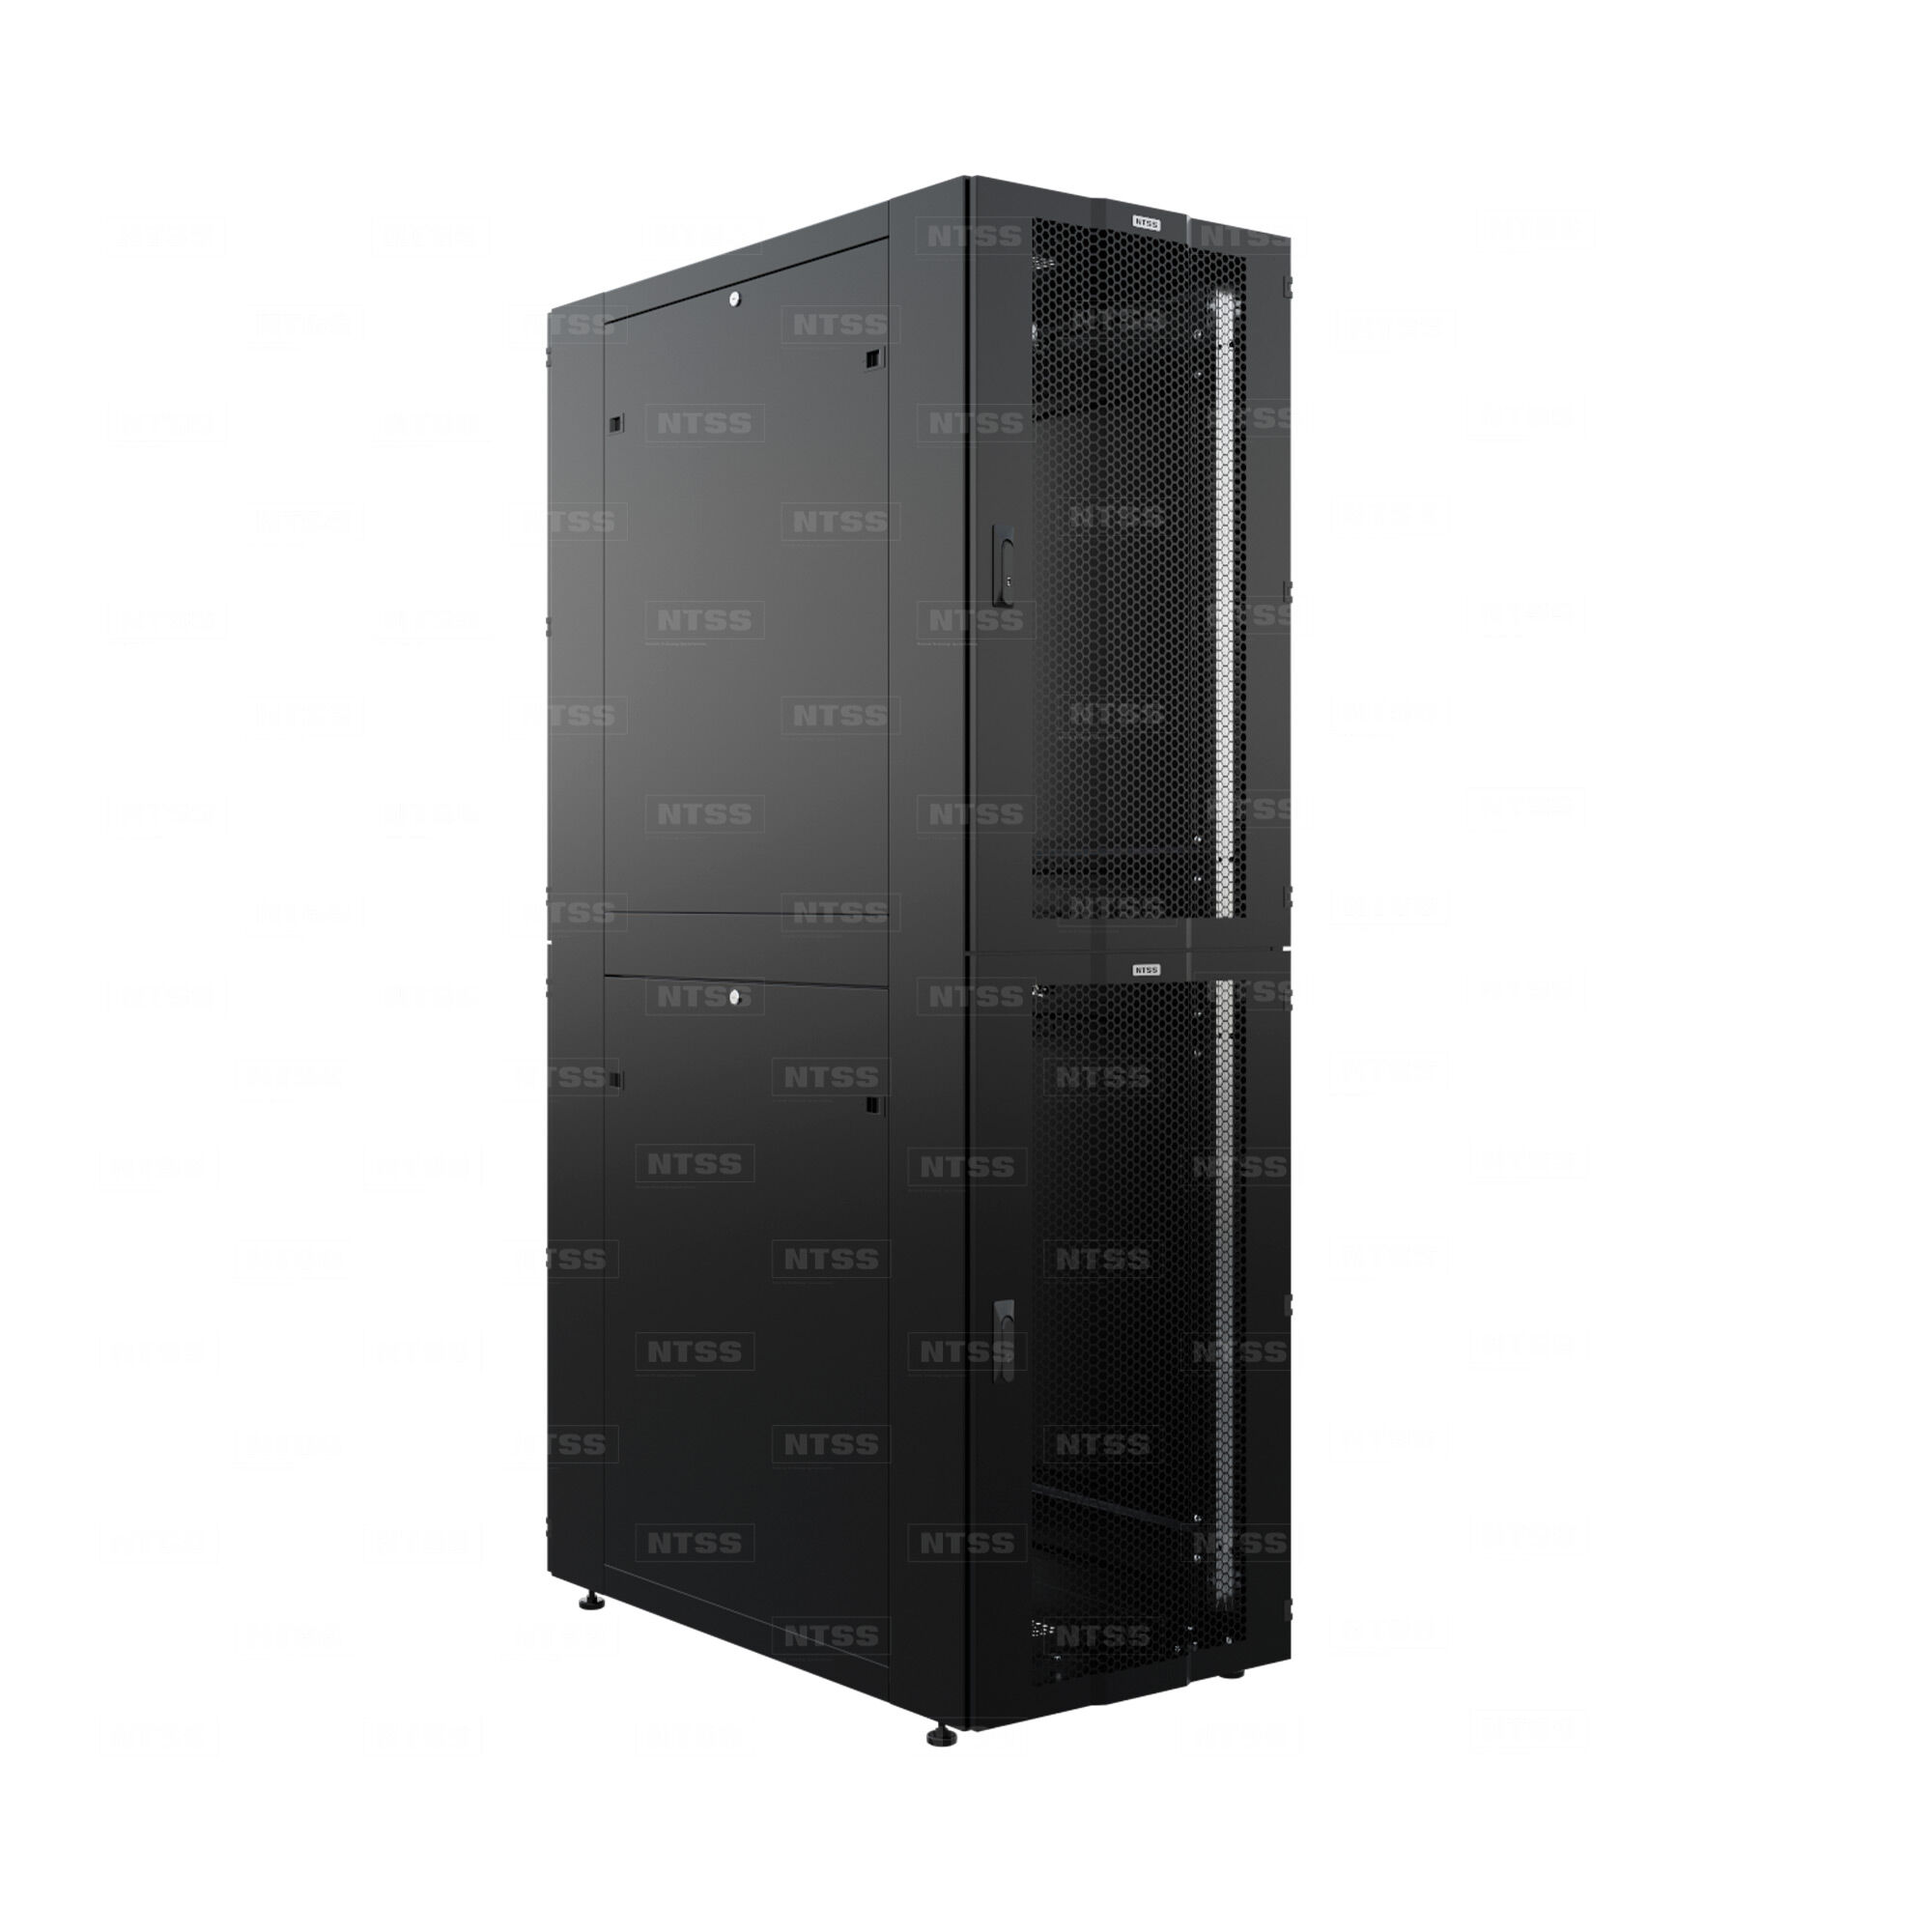 Шкаф напольный секционный NTSS CoPC 39U 800х1070мм, 4 профиля 19 на секцию, 3 секции по 13U, двери перфорированные, регу